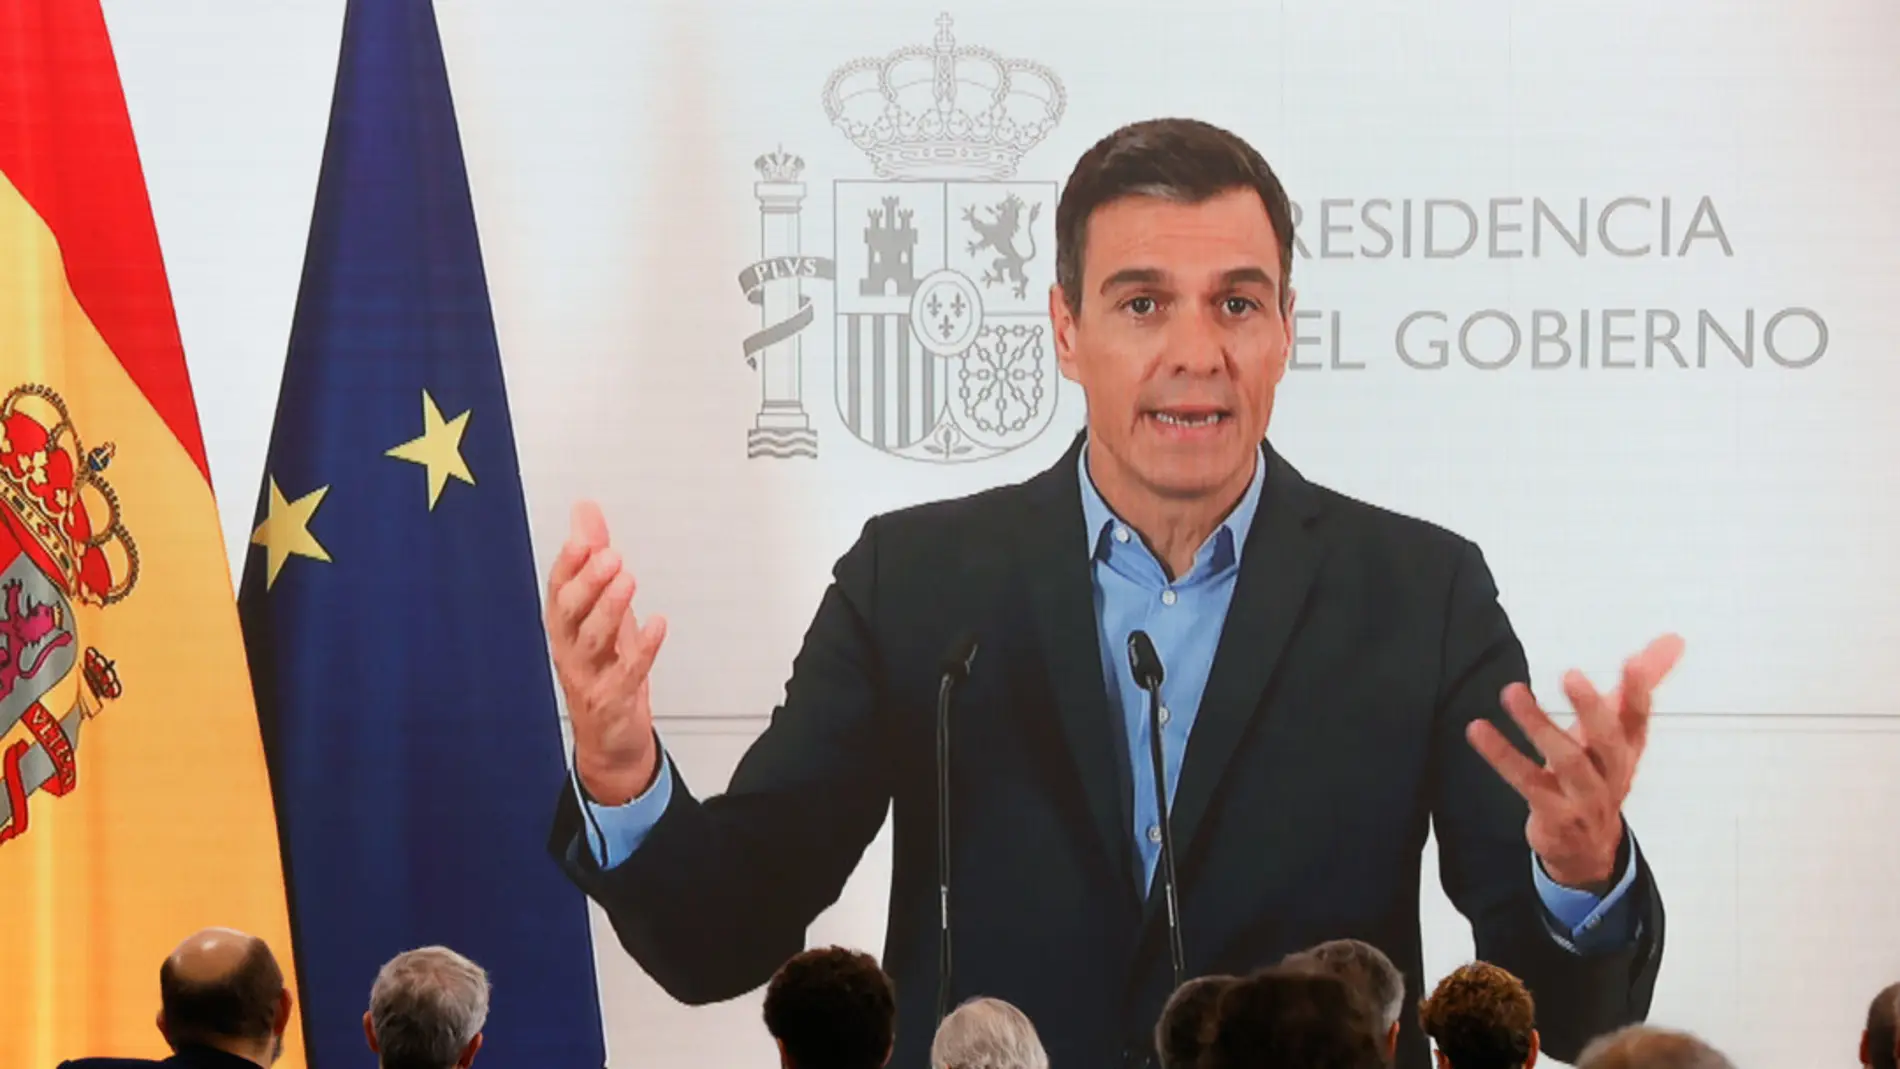 Pedro Sánchez defiende la reforma fiscal y carga contra el "dogmatismo neoliberal que hace aguas"